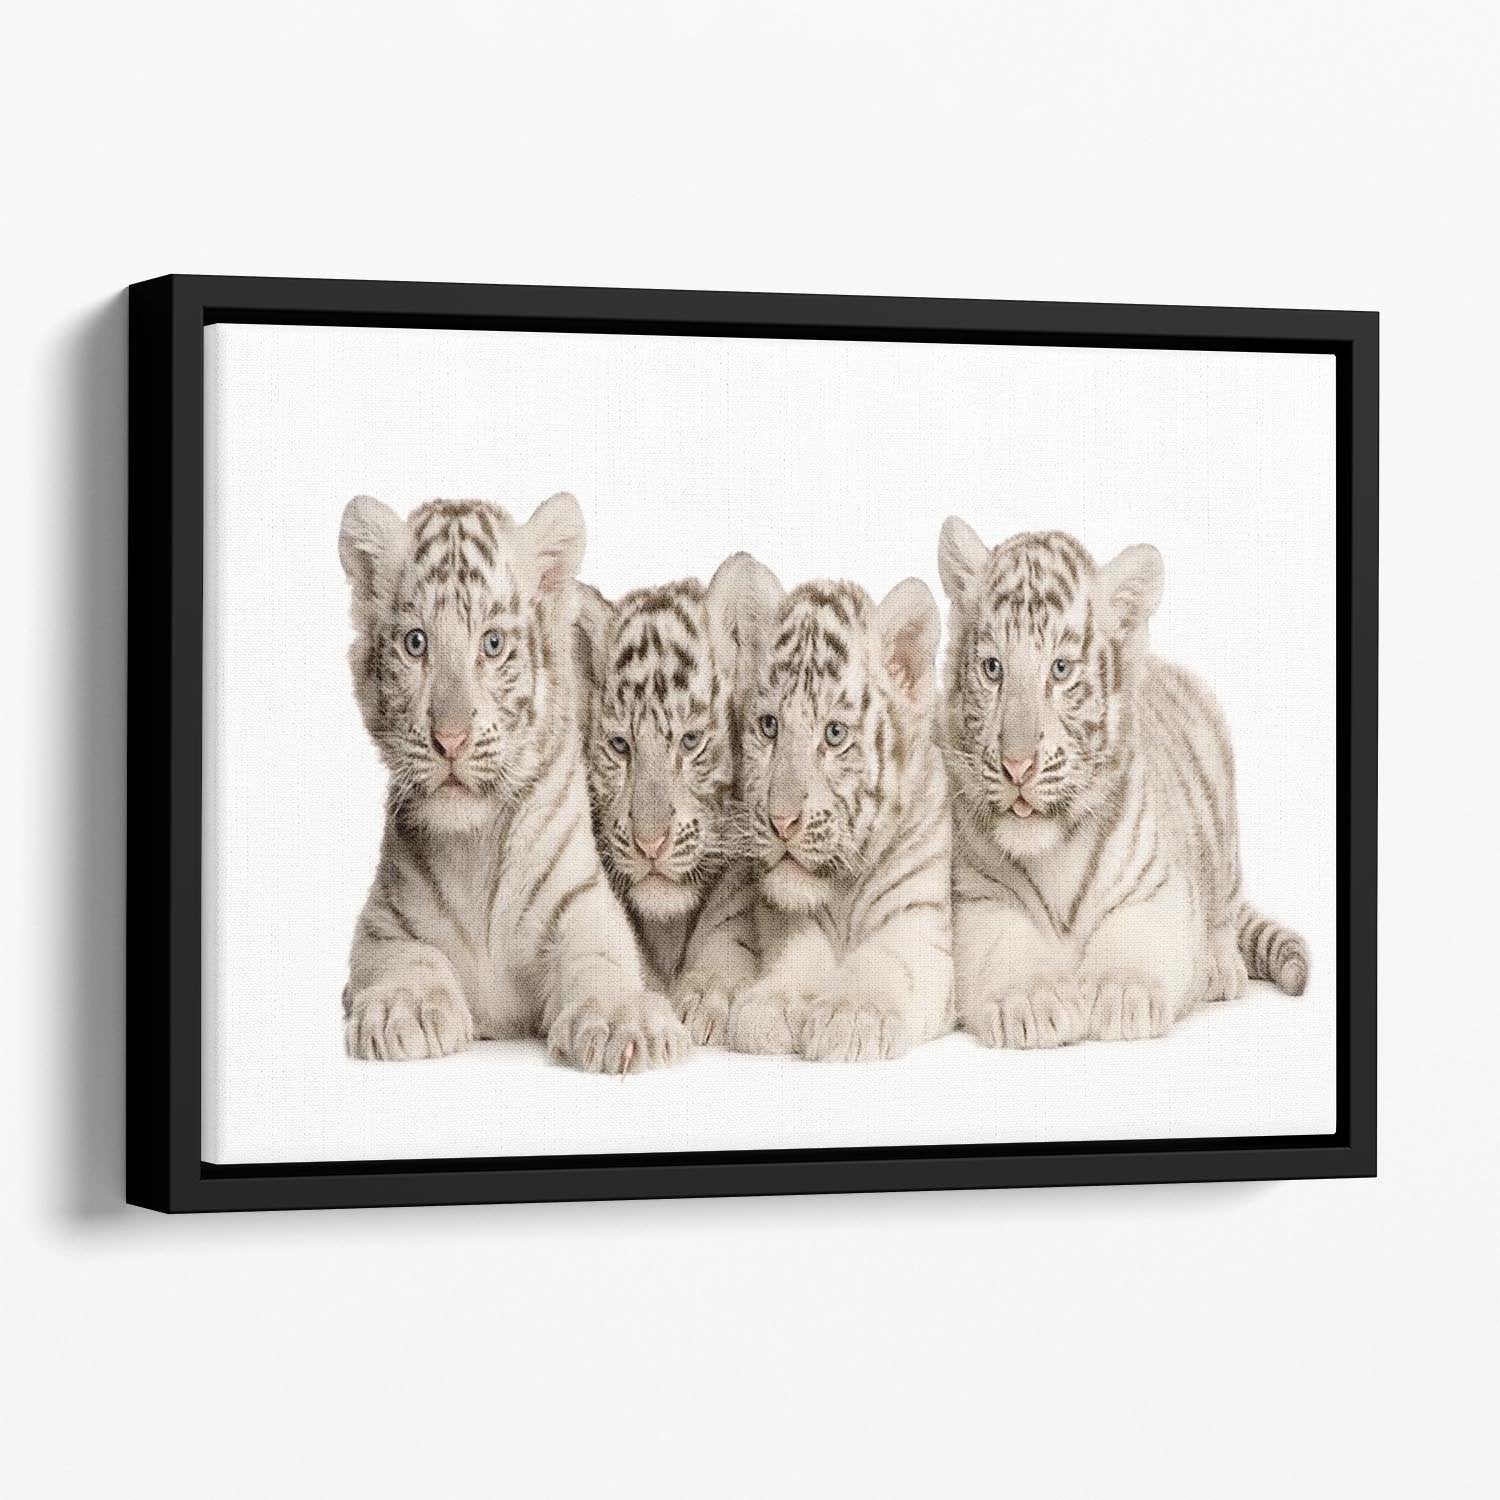 White Tiger cubs 2 months Floating Framed Canvas - Canvas Art Rocks - 1